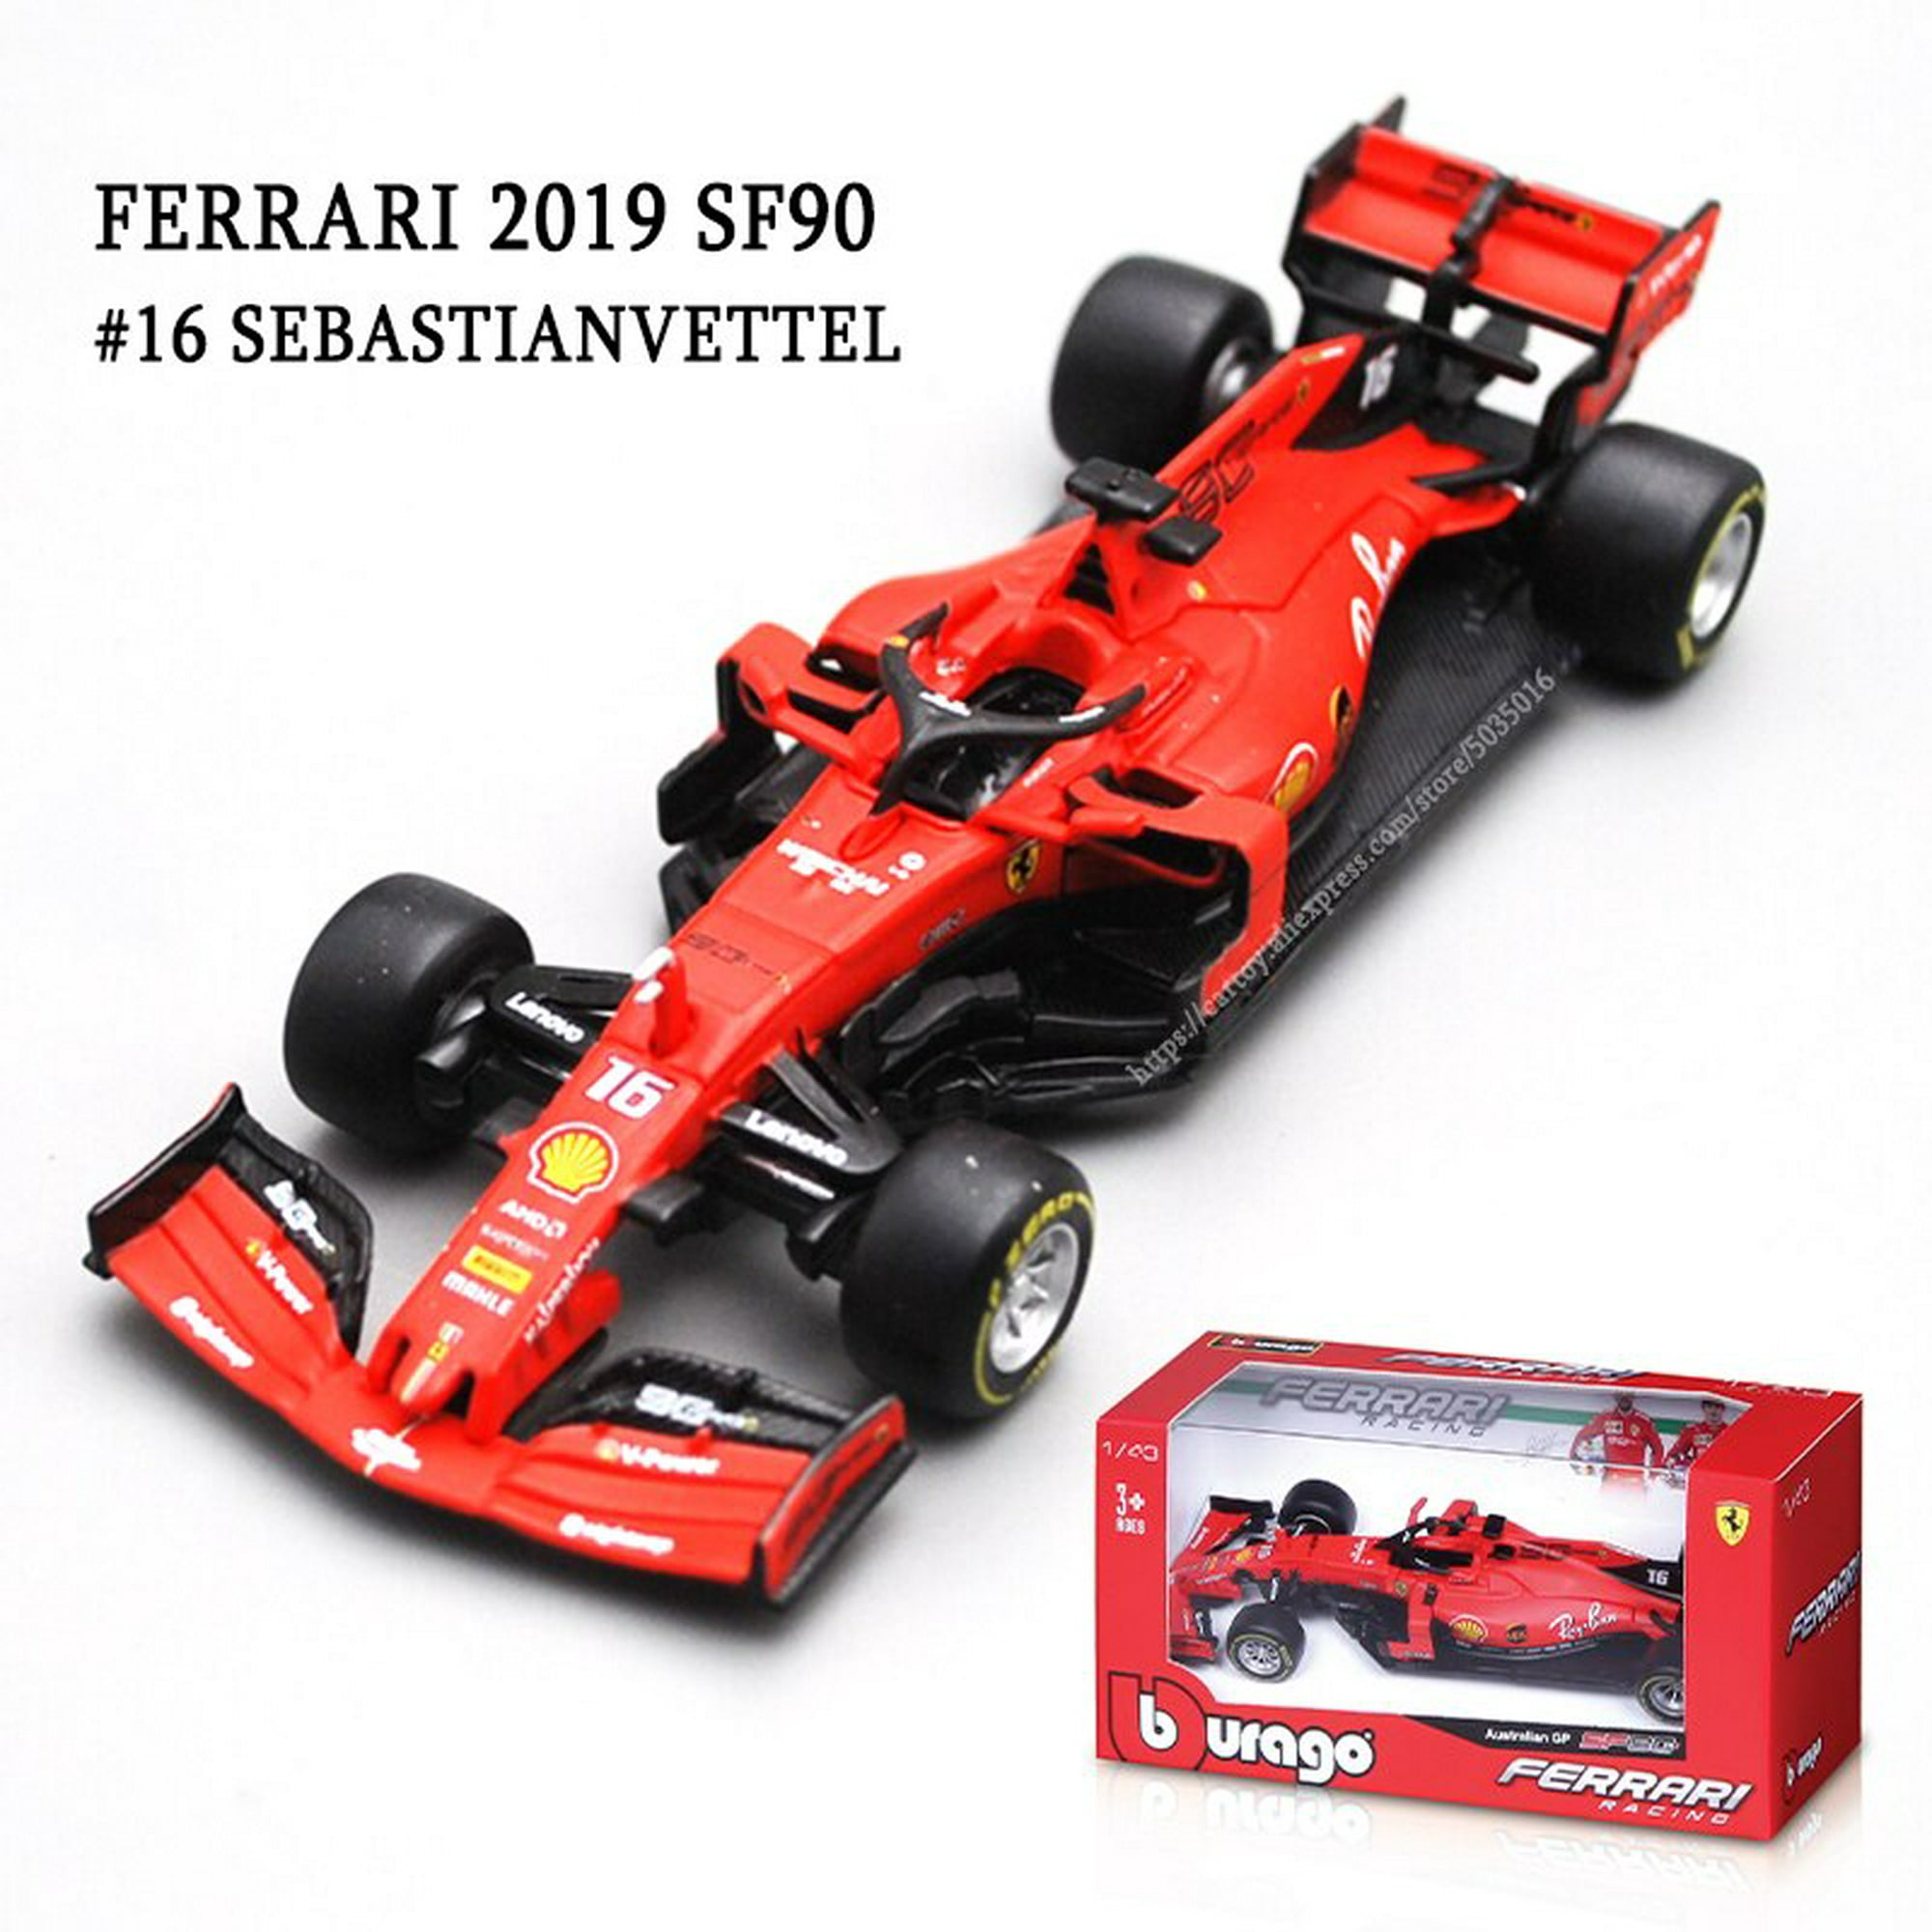 Ferrari trabaja en nuevos materiales para su motor 2019 de F1